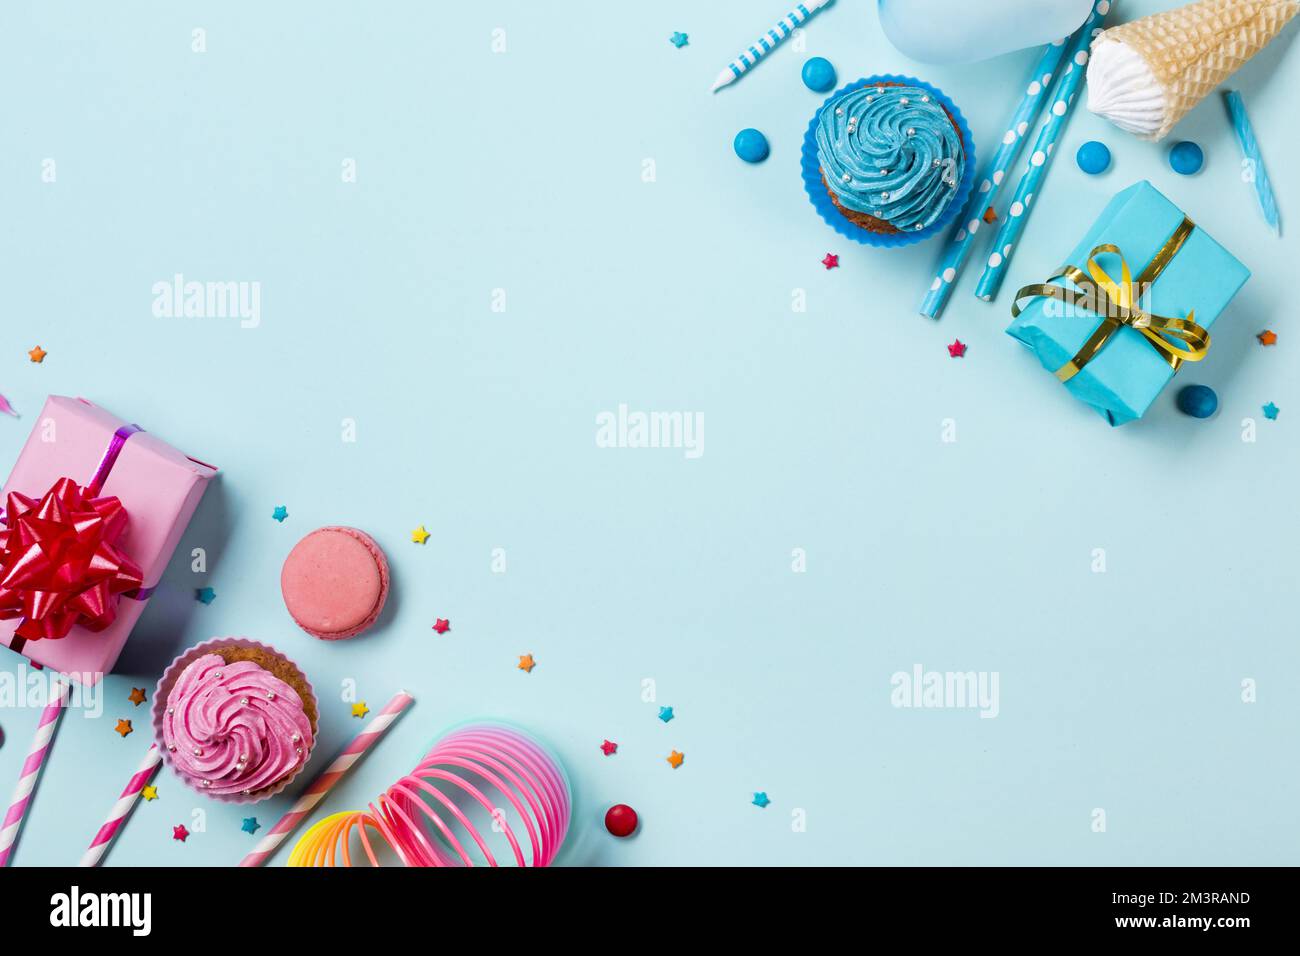 Pinkblaue Partygegenstände mit süßem Hintergrund, Auflösung und hochwertigen, schönen Fotos Stockfoto